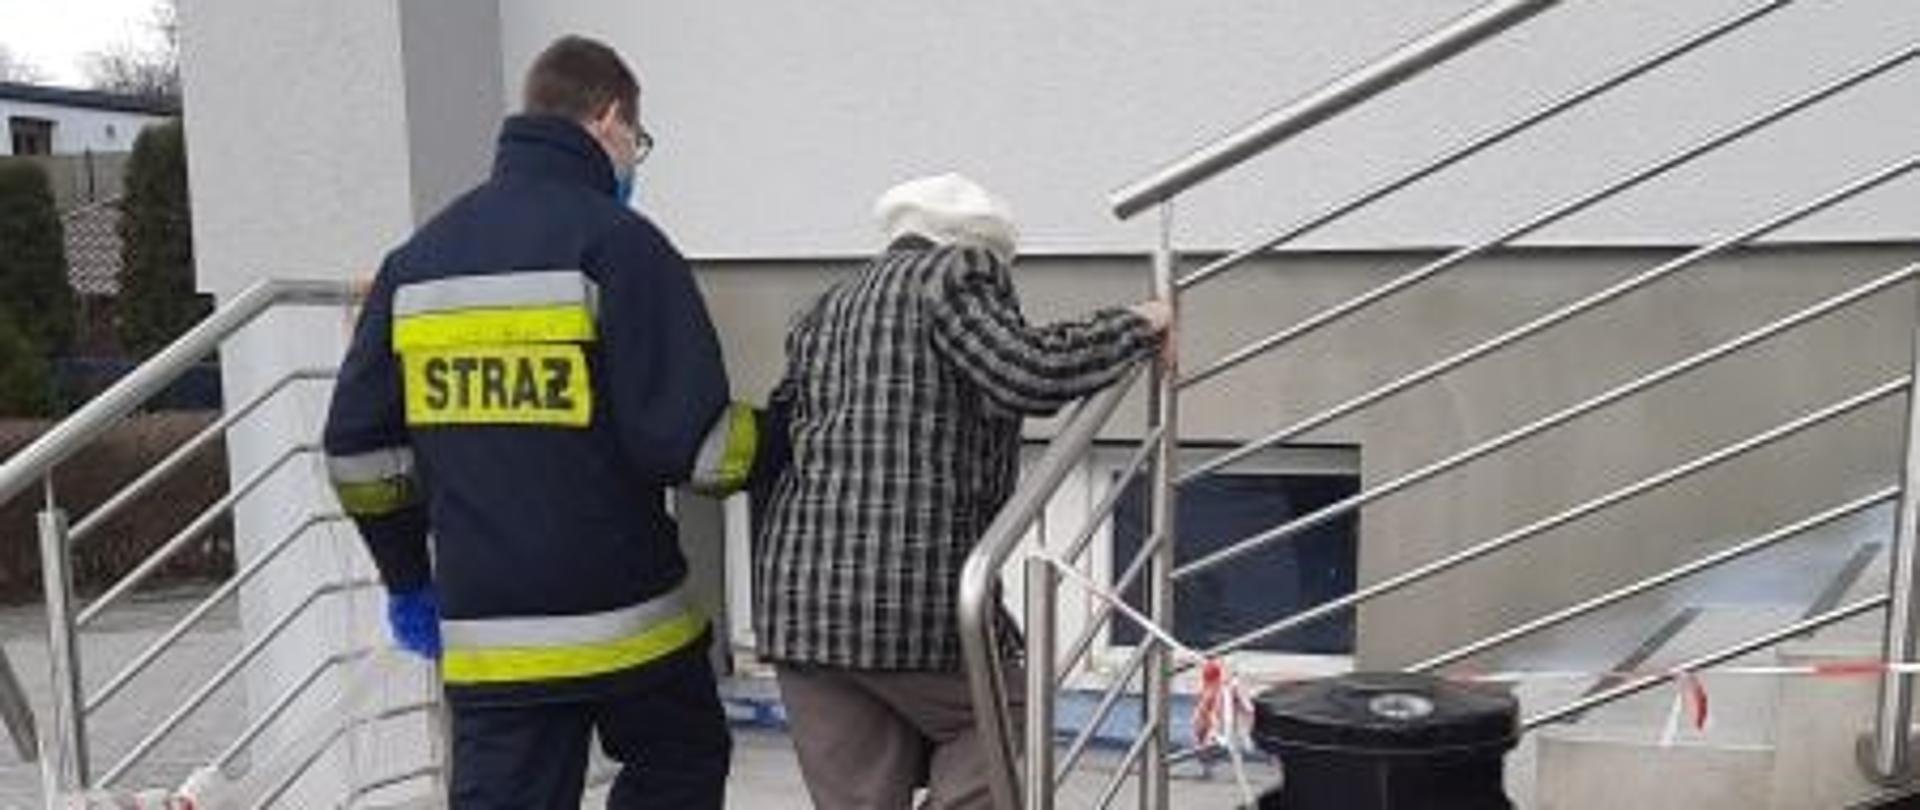 strażak pomaga osobie starszej podczas wchodzenia po schodach trzymając ją pod rękę